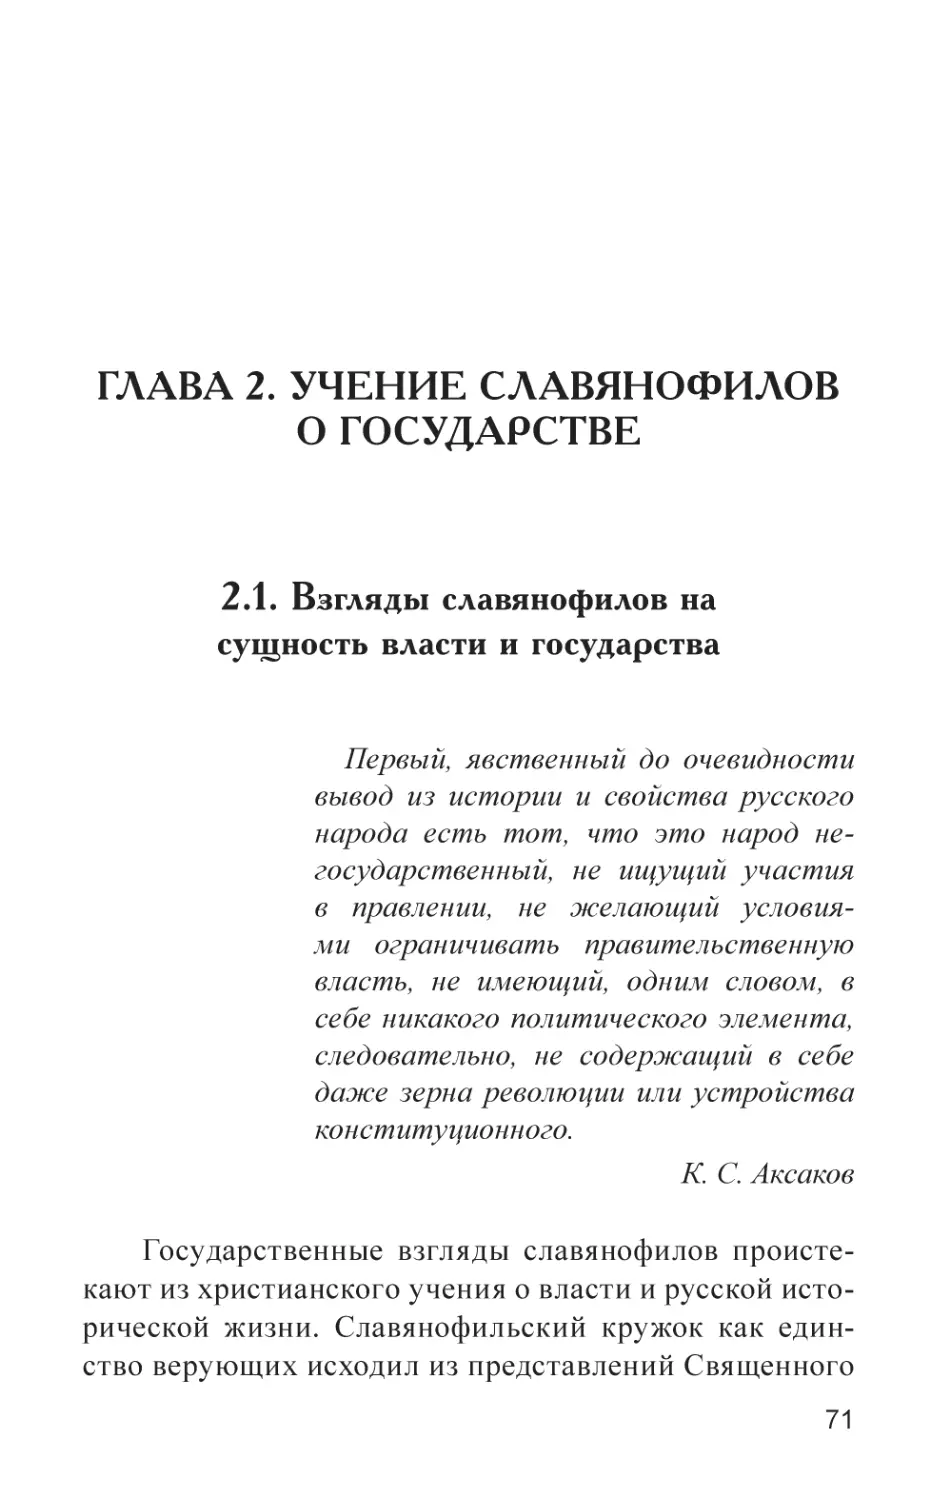 Глава 2. Учение славянофилов о государстве
2.1. Взгляды славянофилов на сущность власти и государства